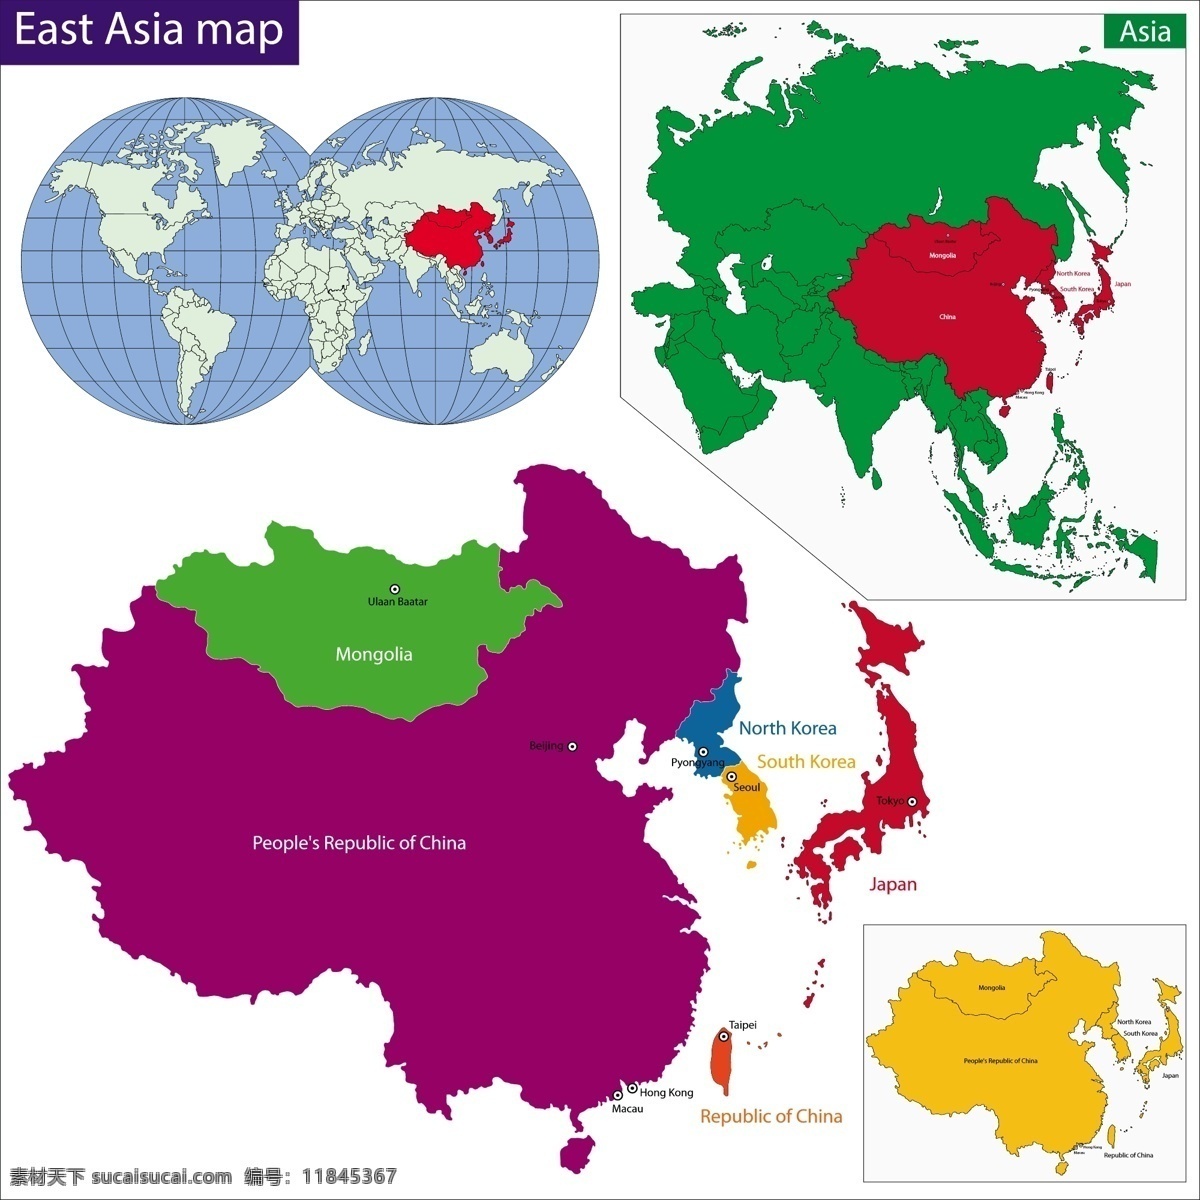 东亚地区 地图 版块 矢量 模板下载 国家地图 世界地图 彩色地图 世界版图 矢量地图 生活百科 矢量素材 白色